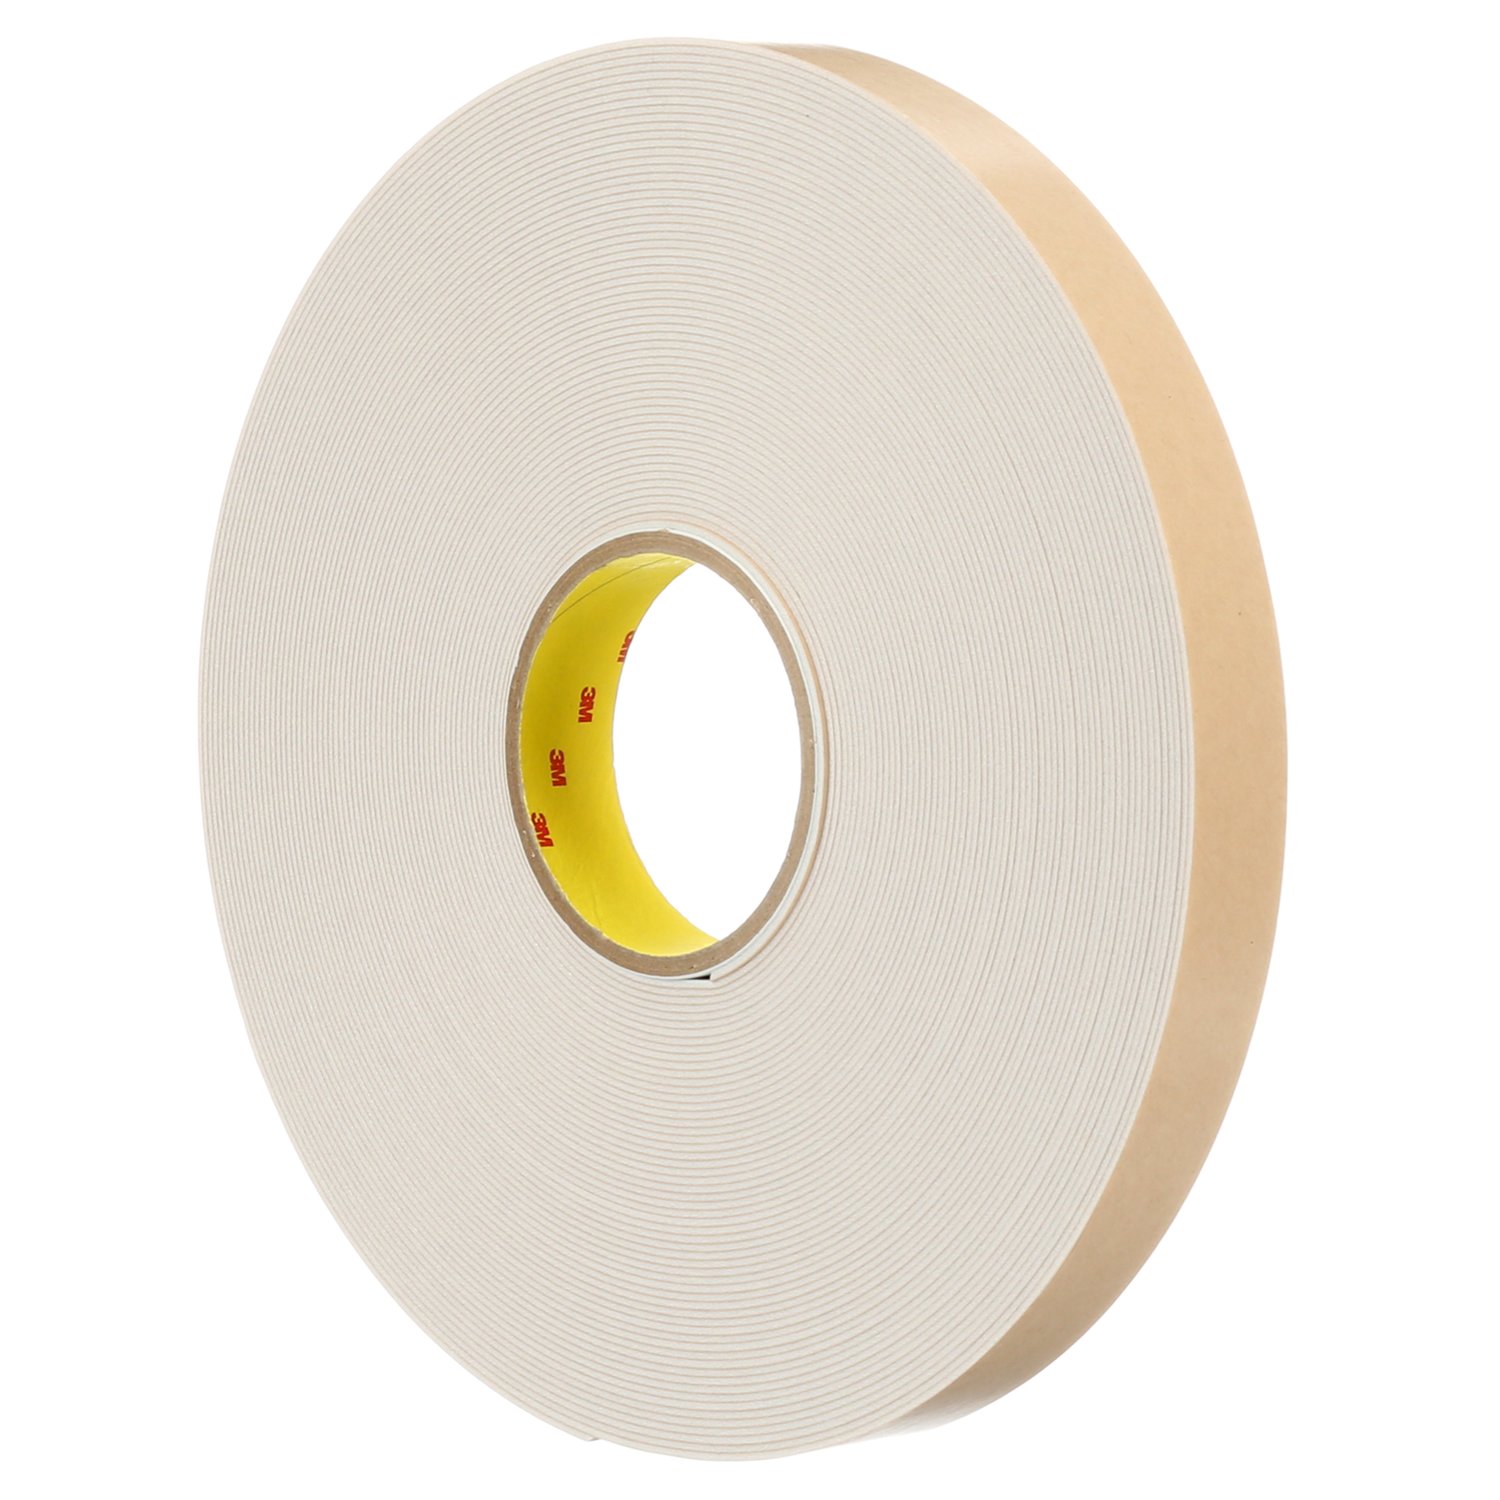 7100171384 - 3M Double Coated Polyethylene Foam Tape 4496W, White, 3/8 in x 36 yd,
62 mil, 24 rolls per case